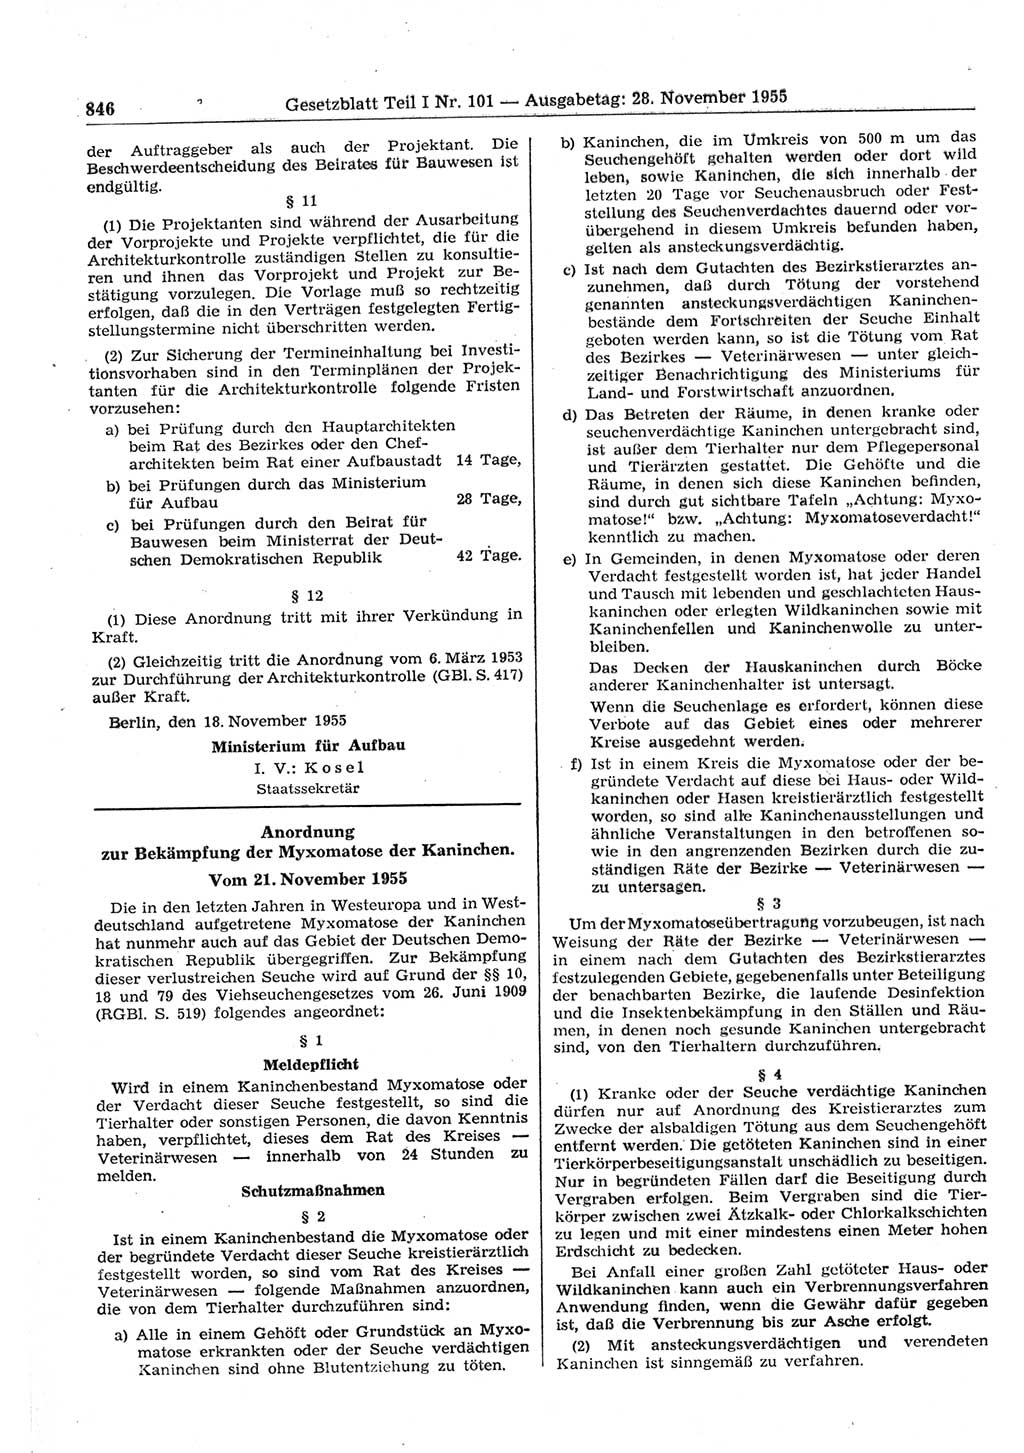 Gesetzblatt (GBl.) der Deutschen Demokratischen Republik (DDR) Teil Ⅰ 1955, Seite 846 (GBl. DDR Ⅰ 1955, S. 846)